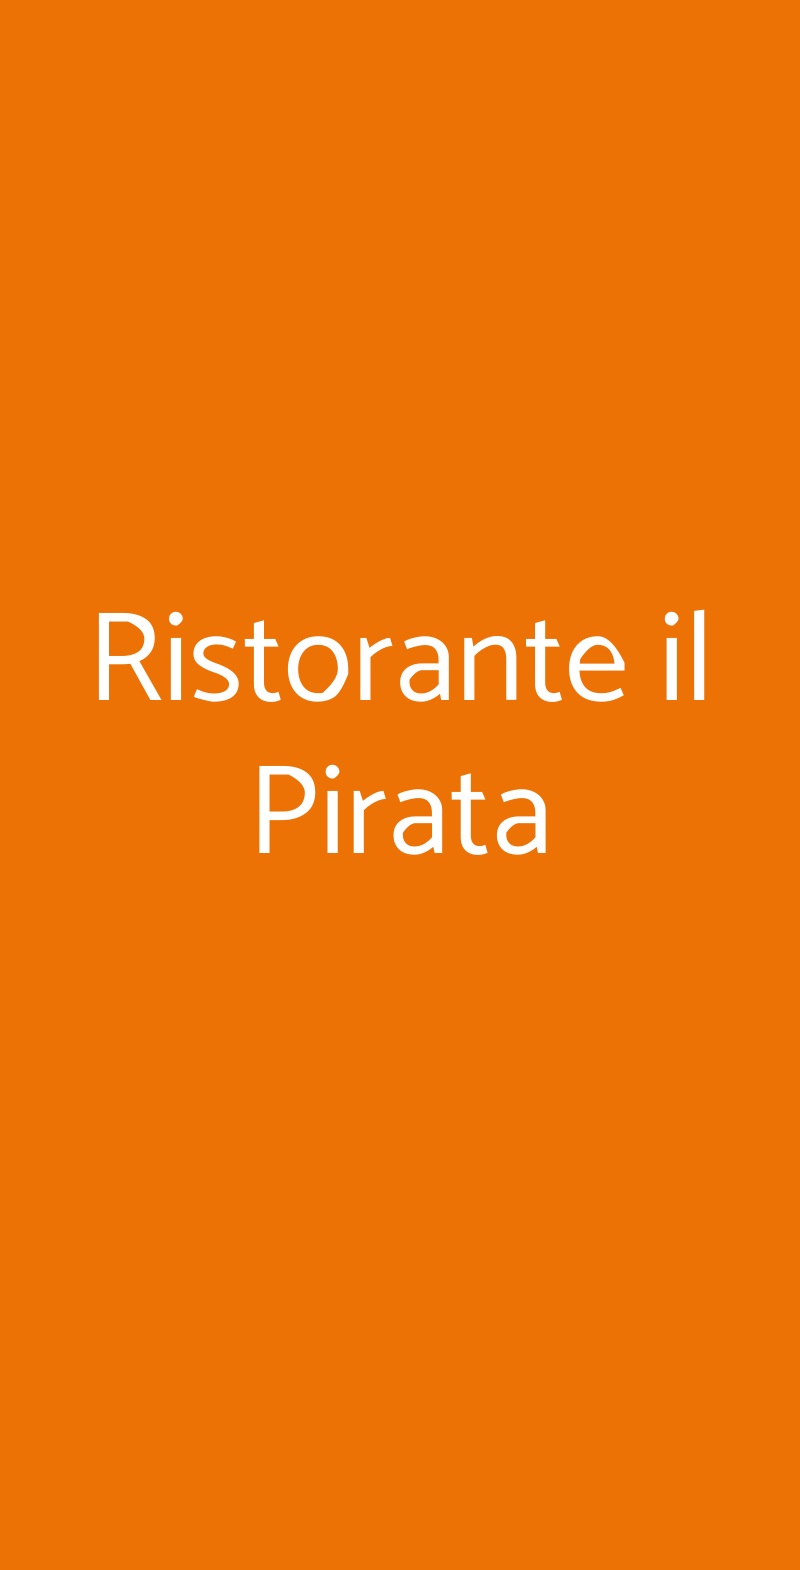 Ristorante il Pirata Terracina menù 1 pagina